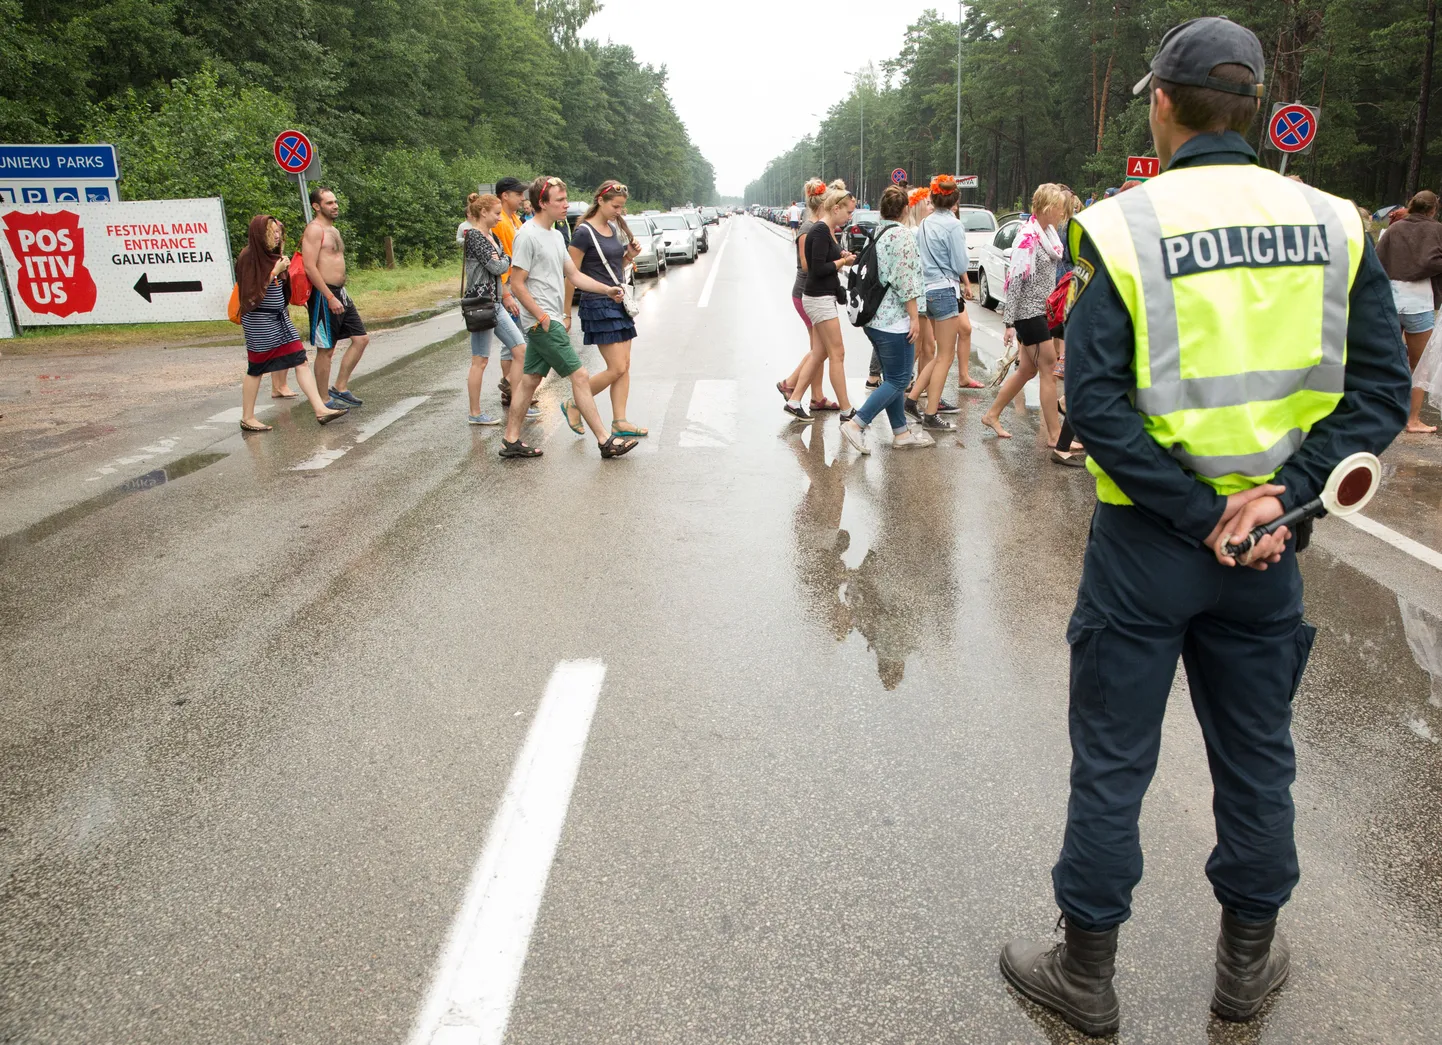 Läti politseinik Positivuse festival.